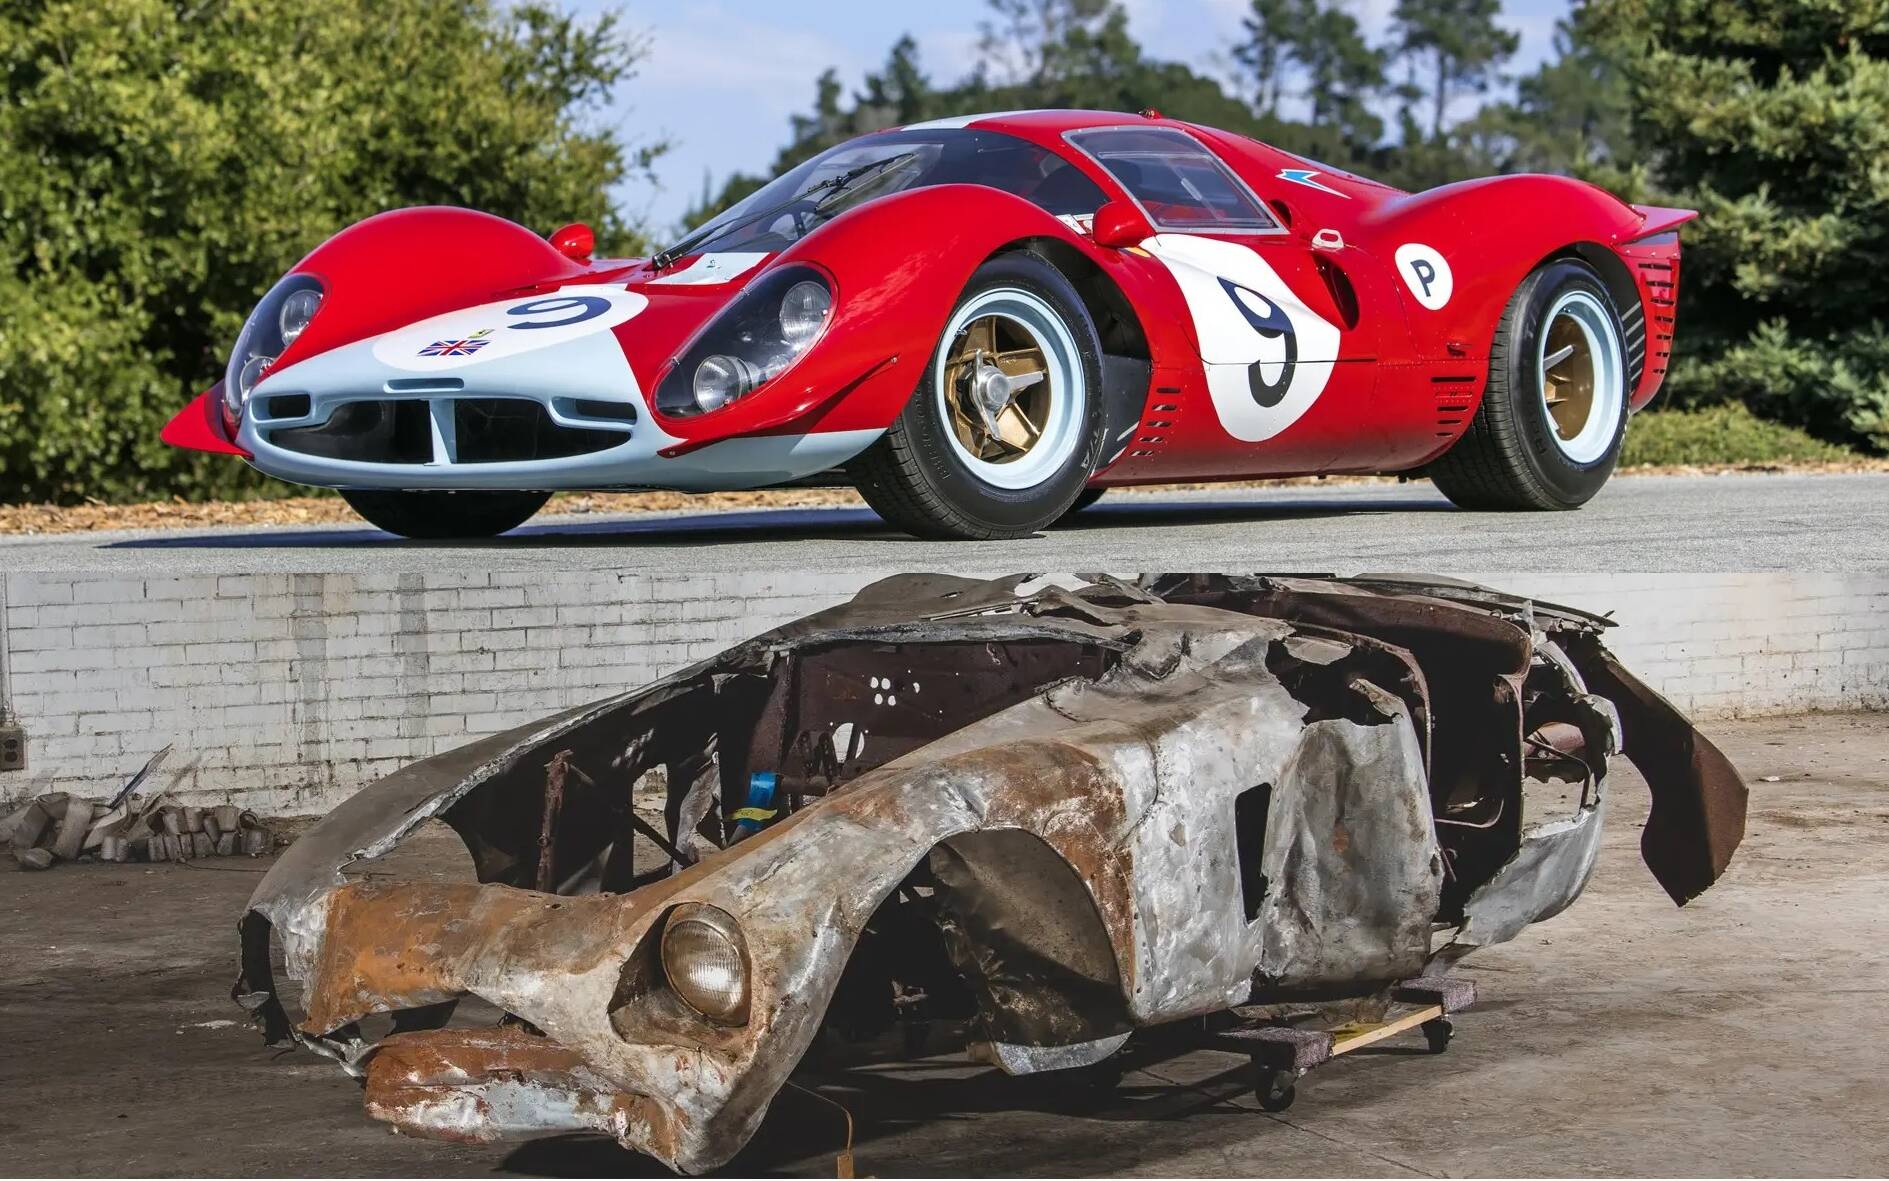 Deux vieilles Ferrari, dont une calcinée, vendues à des prix démentiels 585287-deux-vieilles-ferrari-dont-une-calcinee-vendues-a-des-prix-dementiels